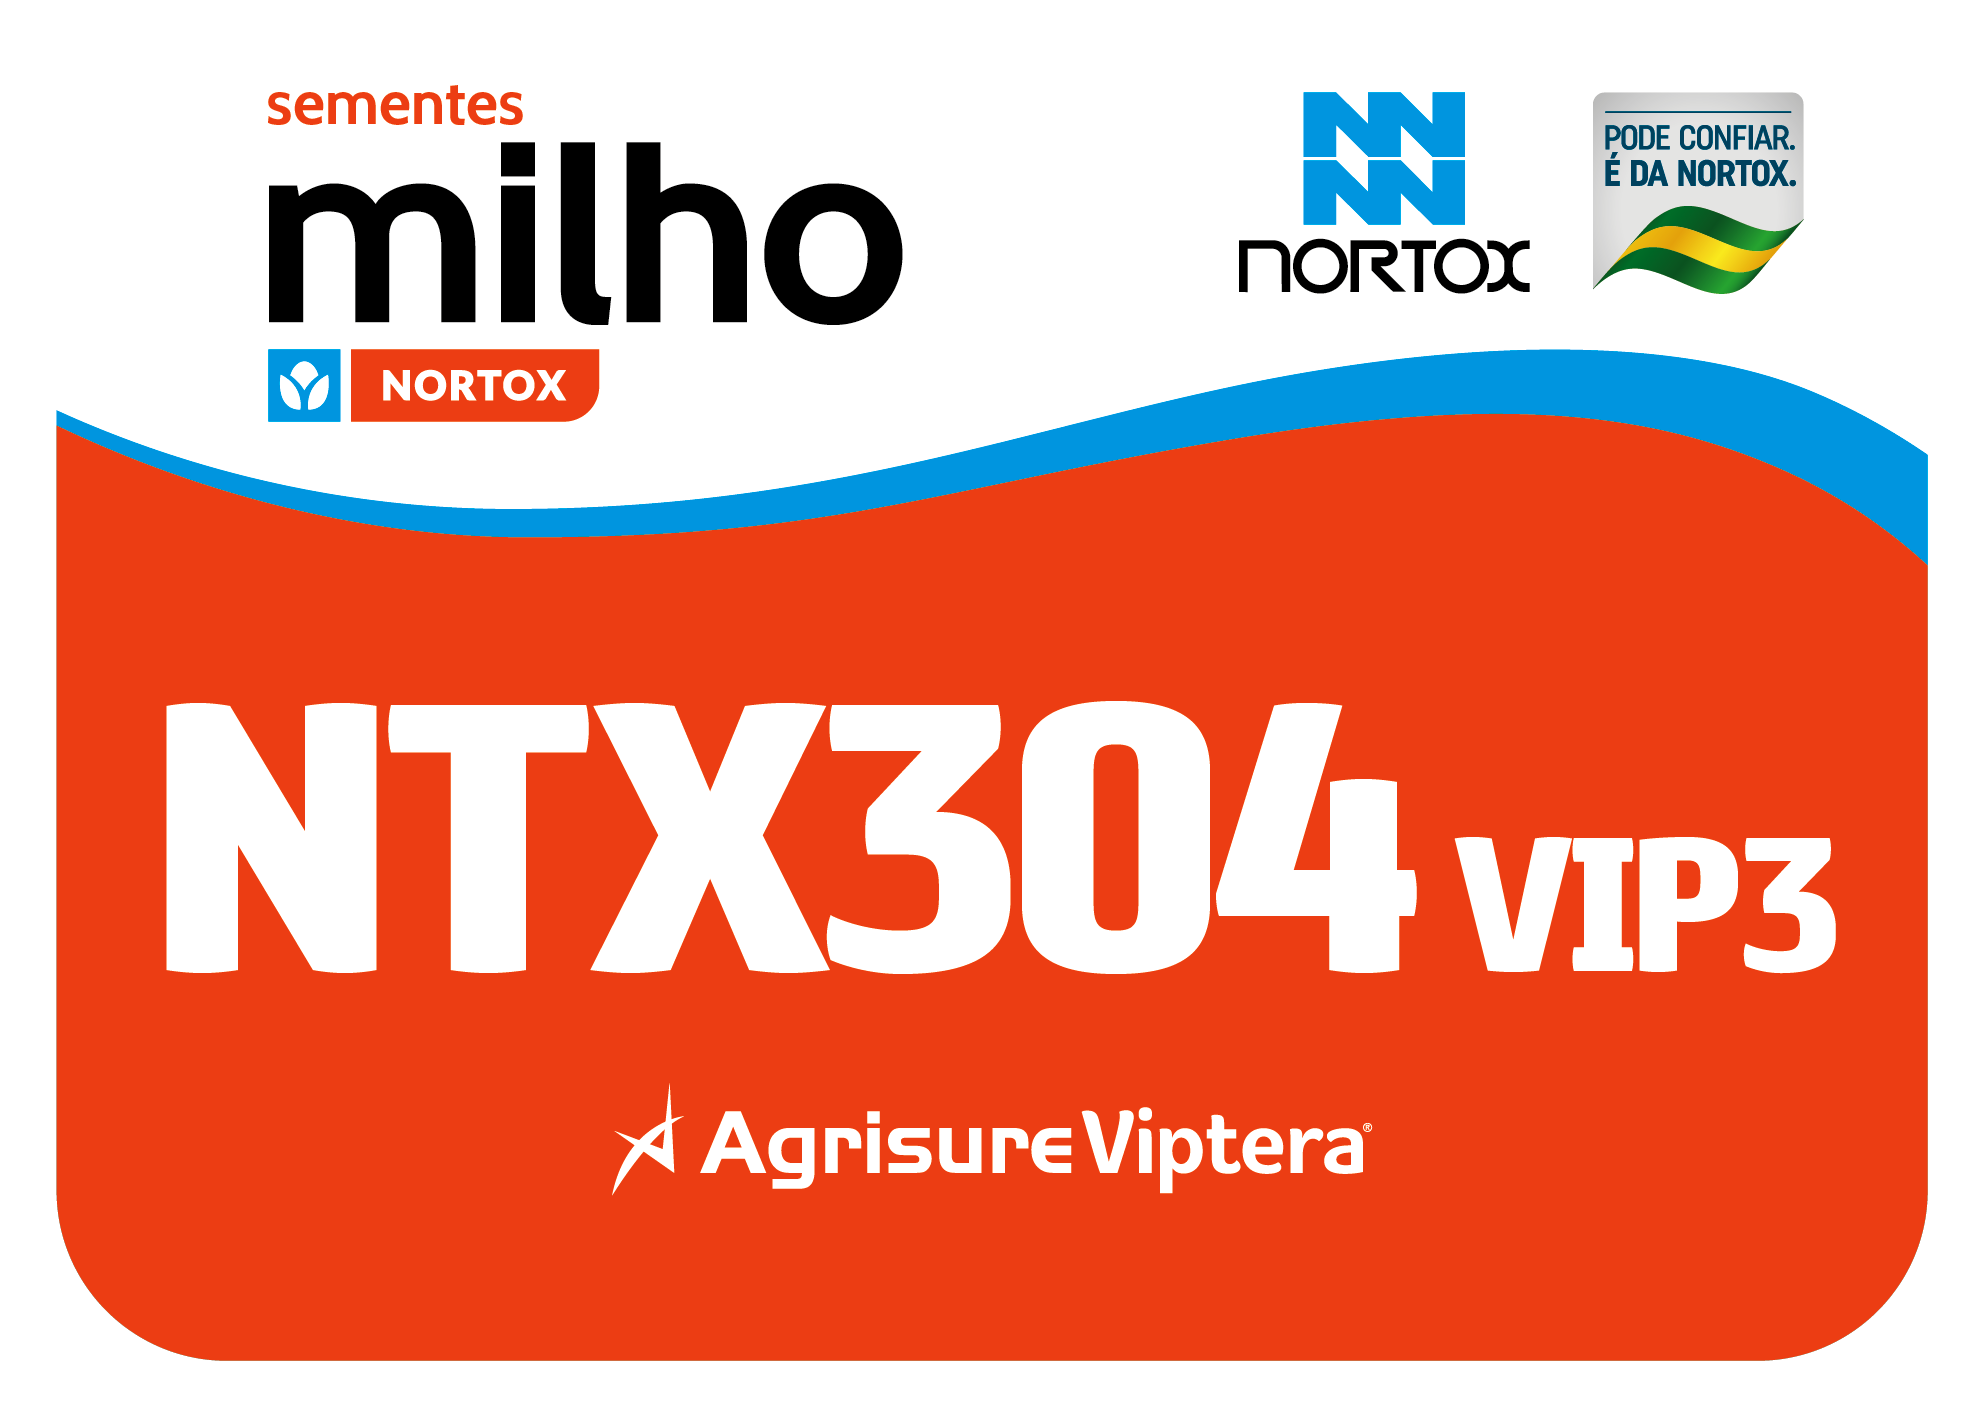 NTX304_VIP3.png